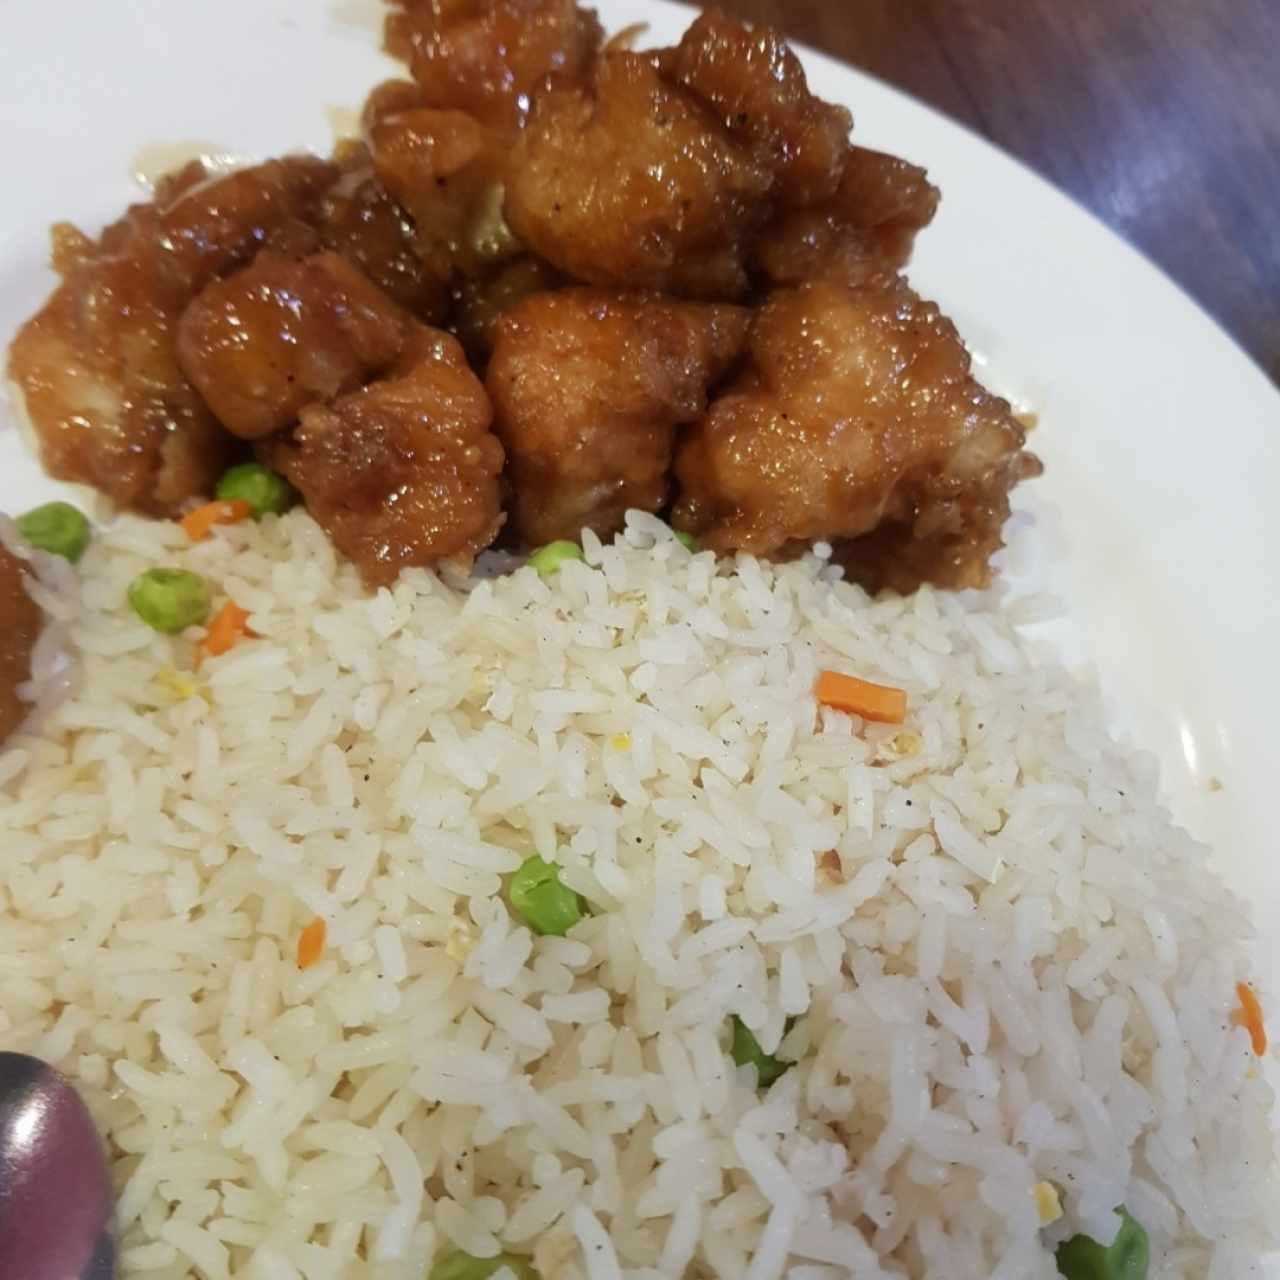 arroz frito y pollo dulce